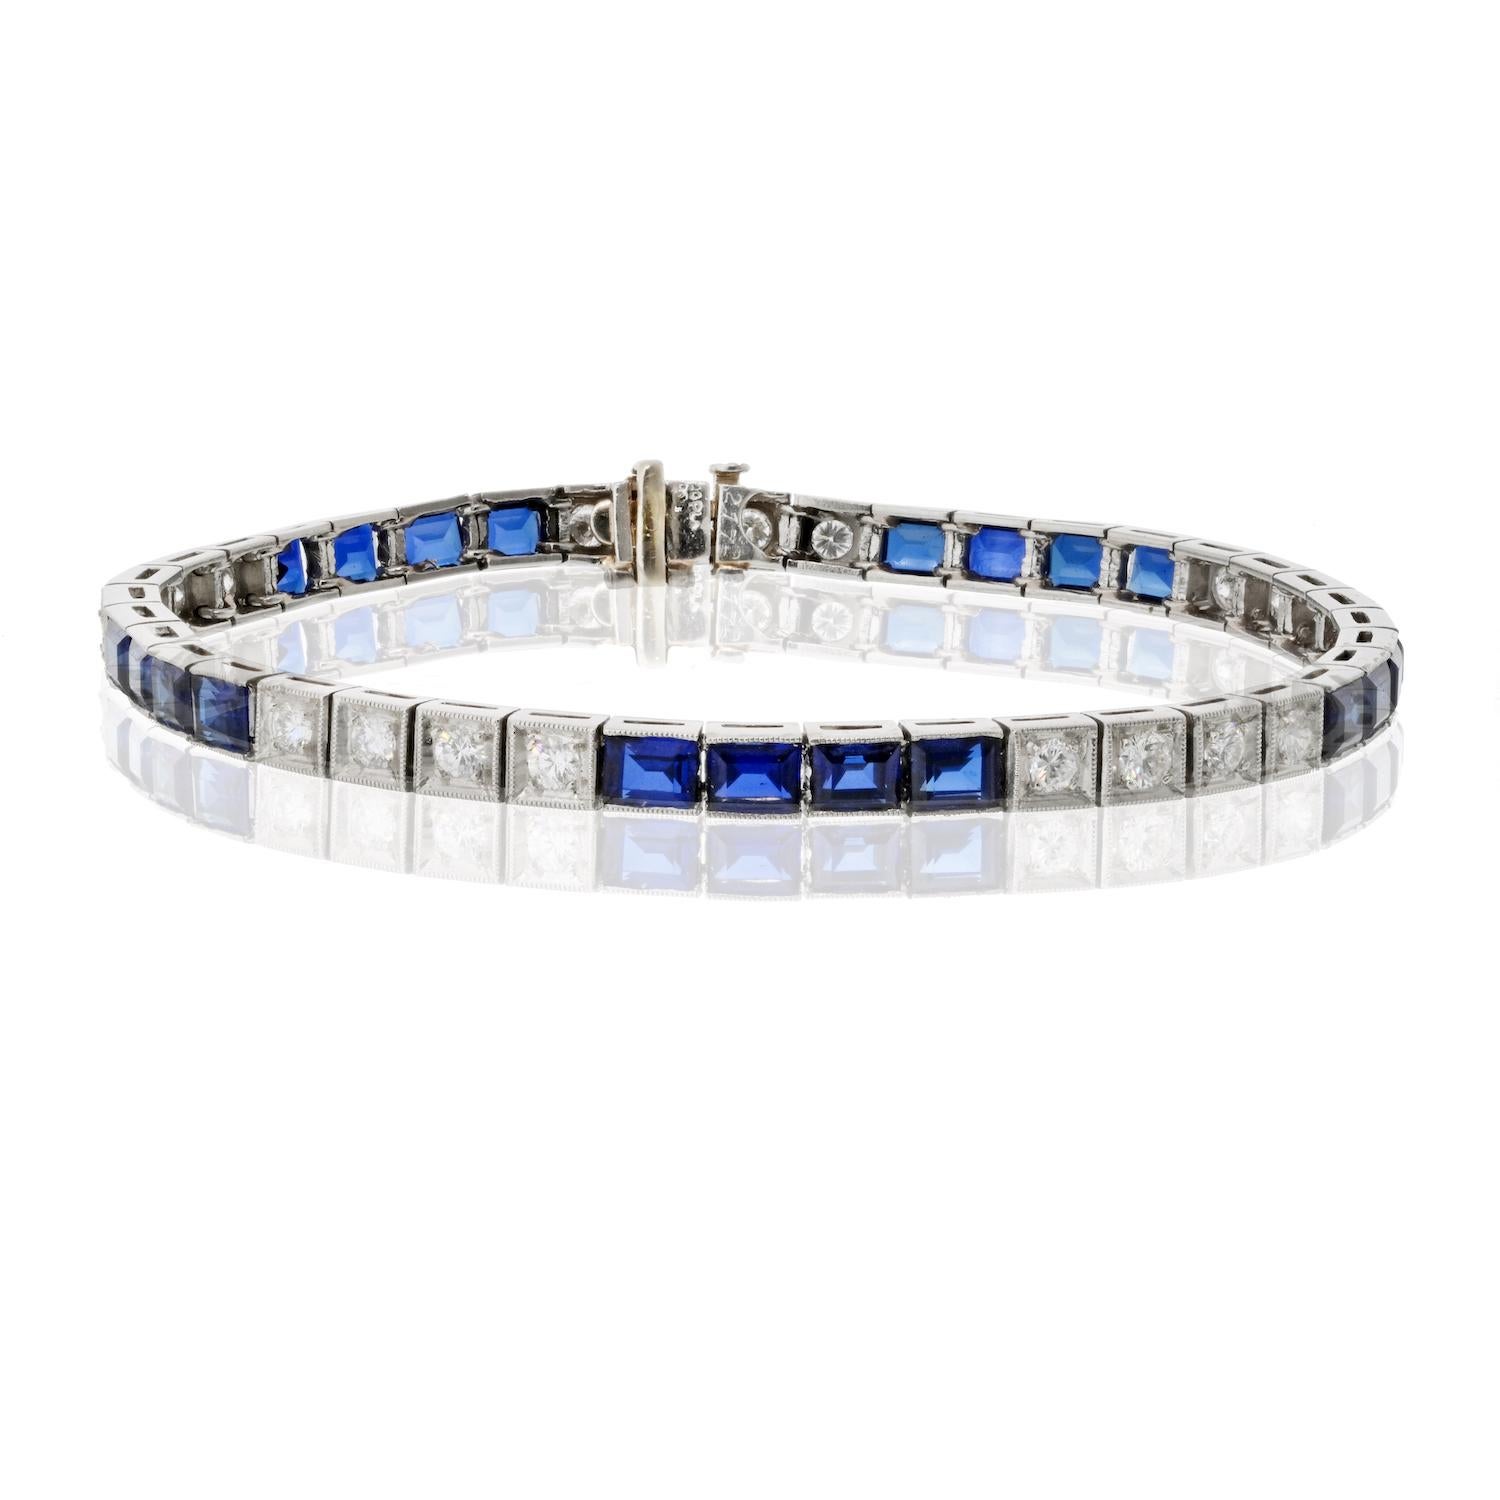 D'une élégance et d'une sophistication intemporelles, le bracelet saphir et diamant en platine d'Oscar Heyman est une véritable merveille d'artisanat et de luxe. 

Fabriqué en platine lustré, ce bracelet exquis est orné d'une étonnante série de